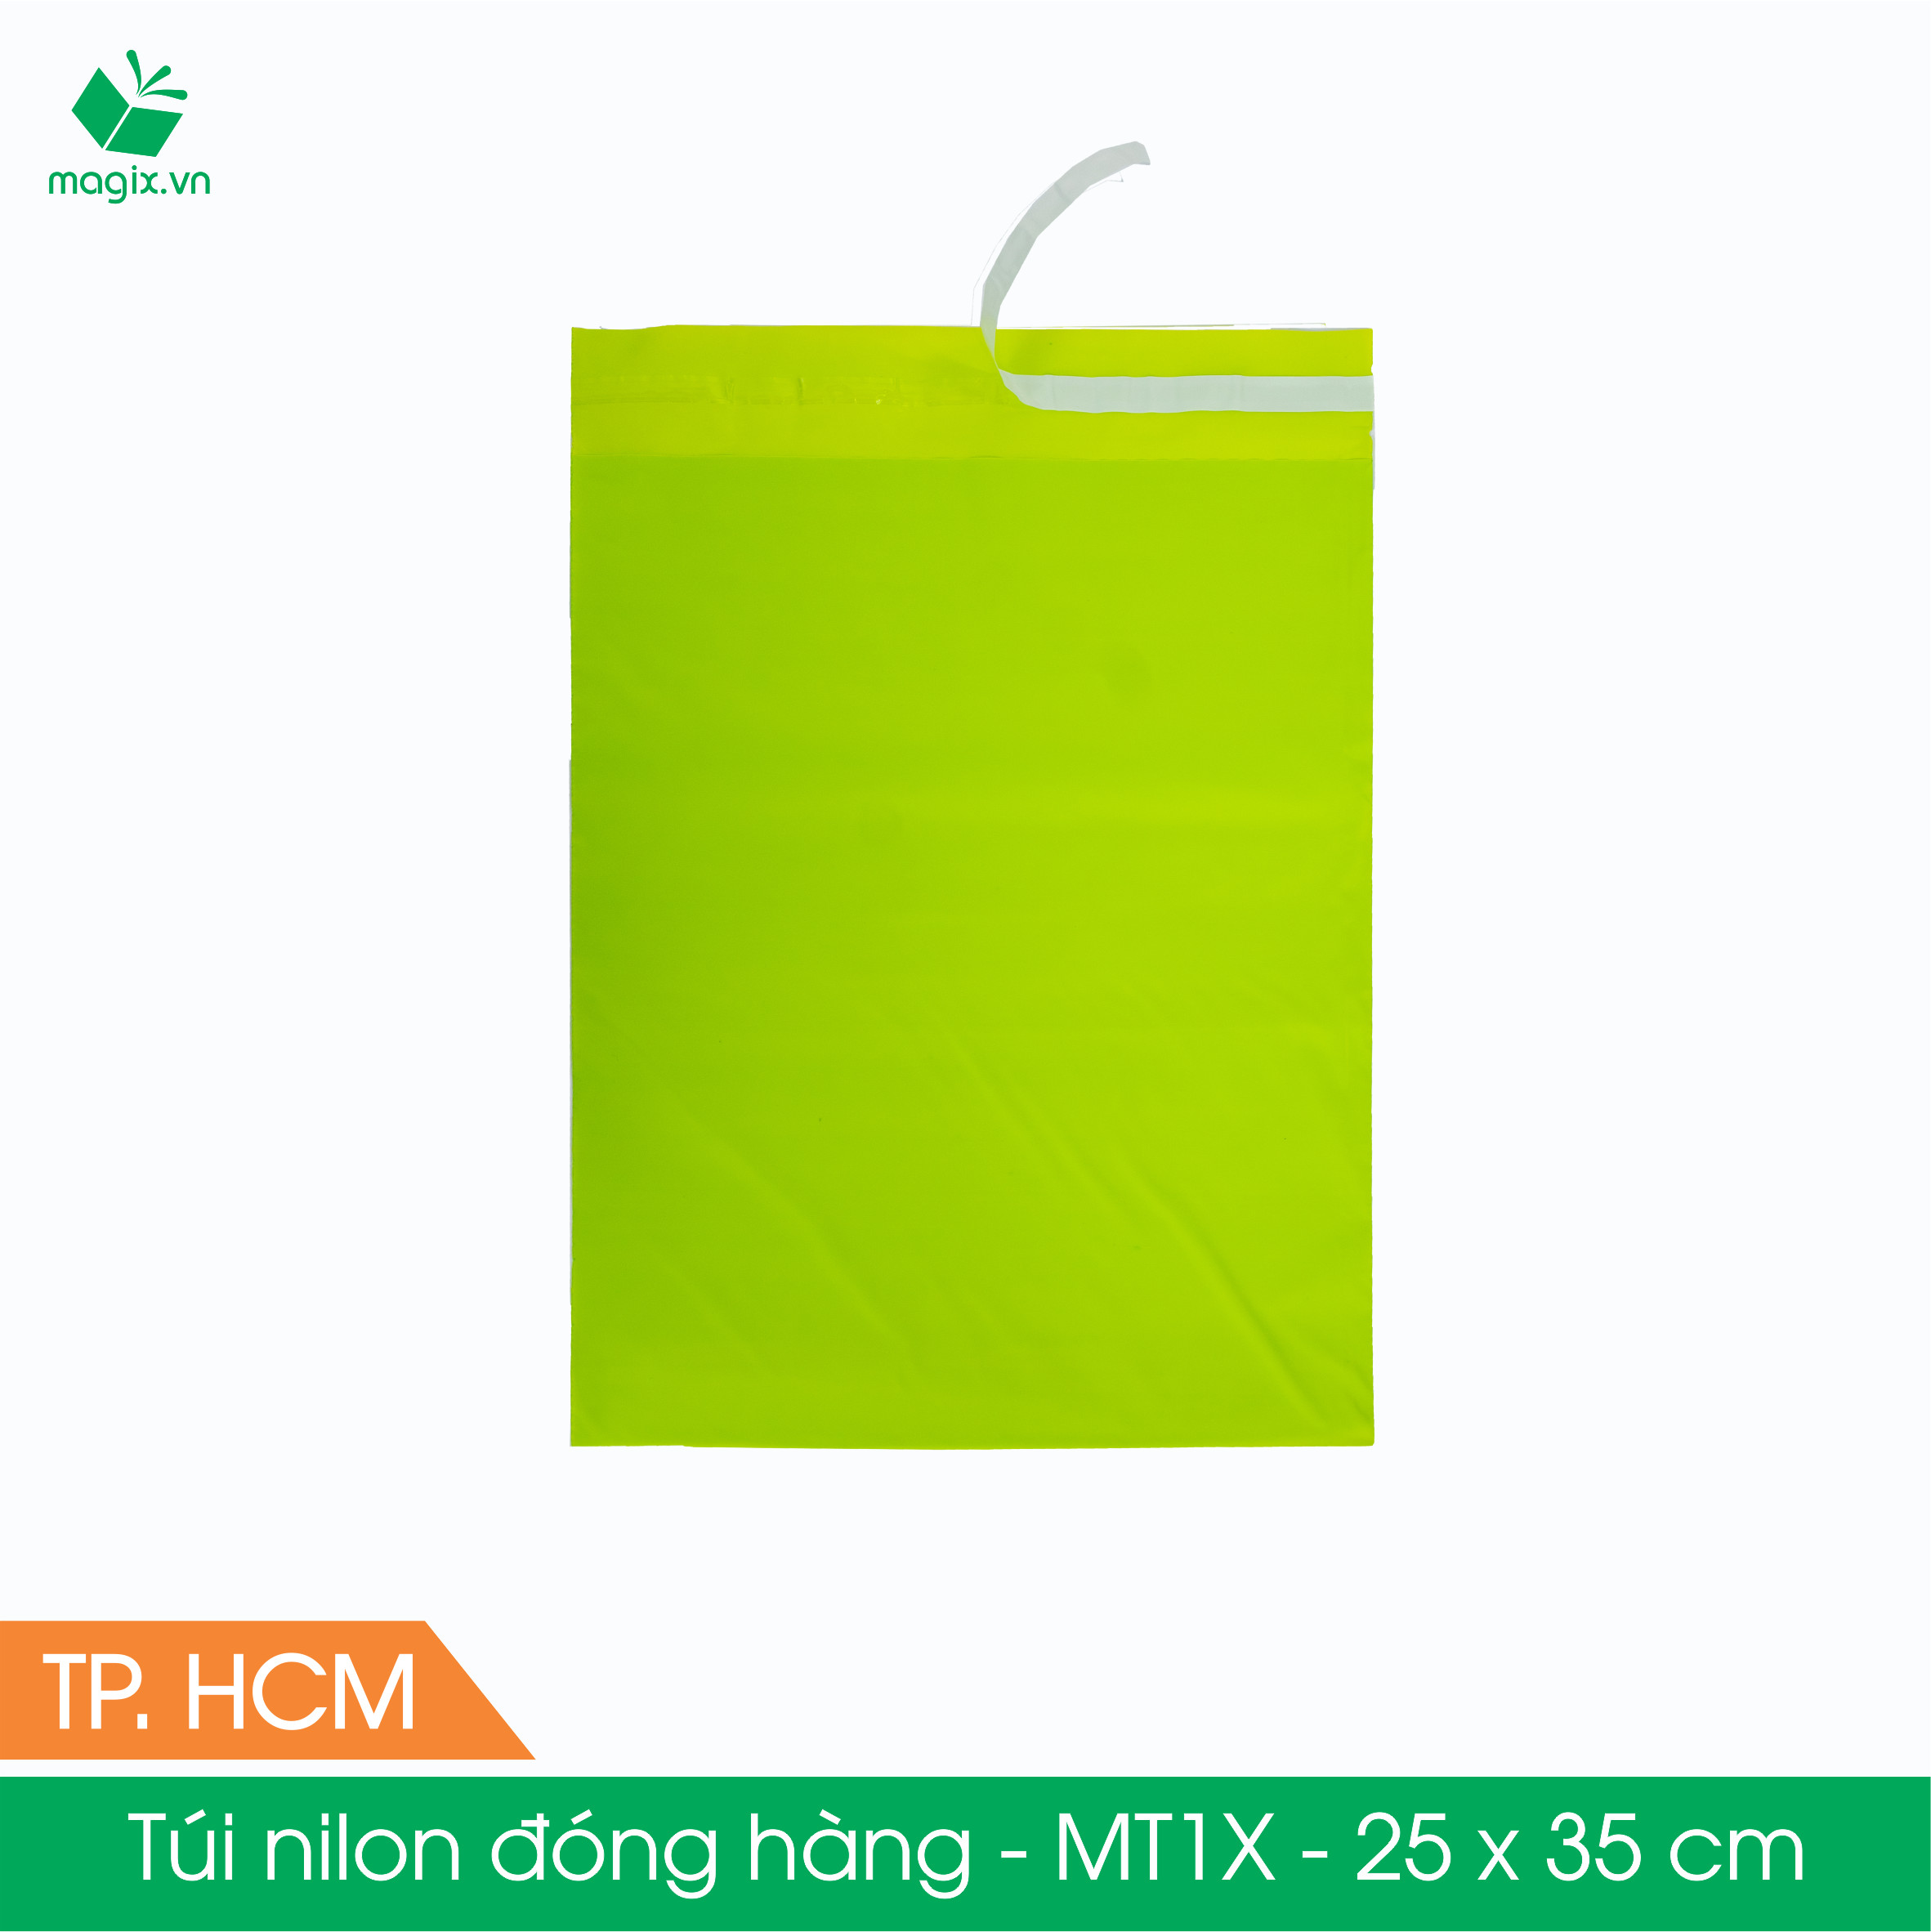 MT1X - 25x35 cm - Túi nilon gói hàng - 300 túi niêm phong đóng hàng màu xanh lá mạ